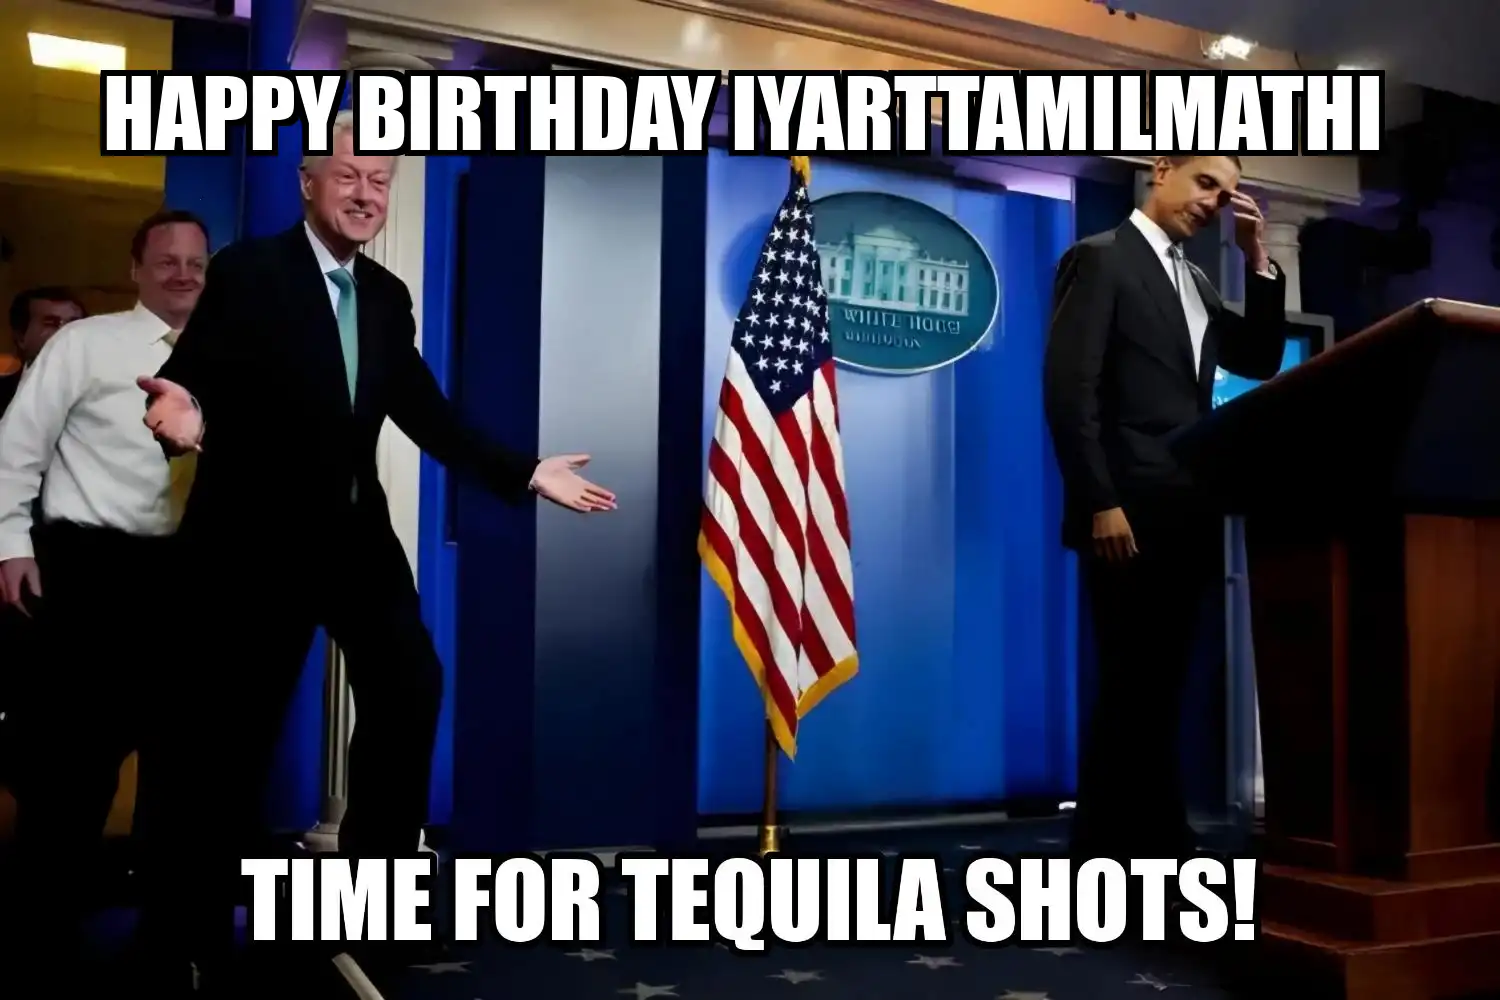 Happy Birthday Iyarttamilmathi Time For Tequila Shots Memes